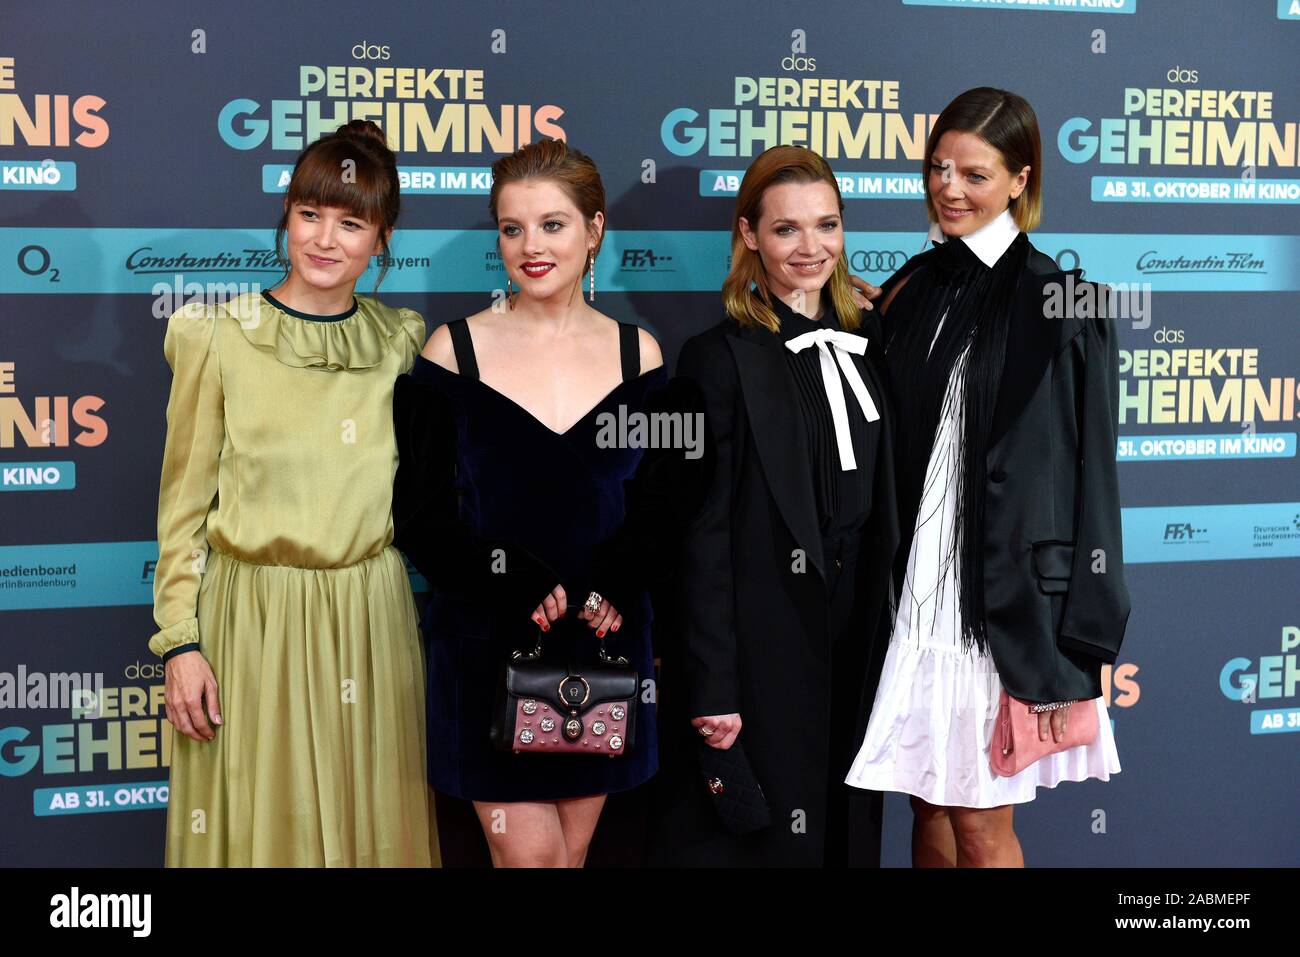 De gauche à droite : Producteur Lena Schömann avec les acteurs Jella Haase, Karoline Herfurth et Jessica Schwarz à la première du film 'Das perfekte Geheimnis" au Mathäser Kino à Munich. [Traduction automatique] Banque D'Images